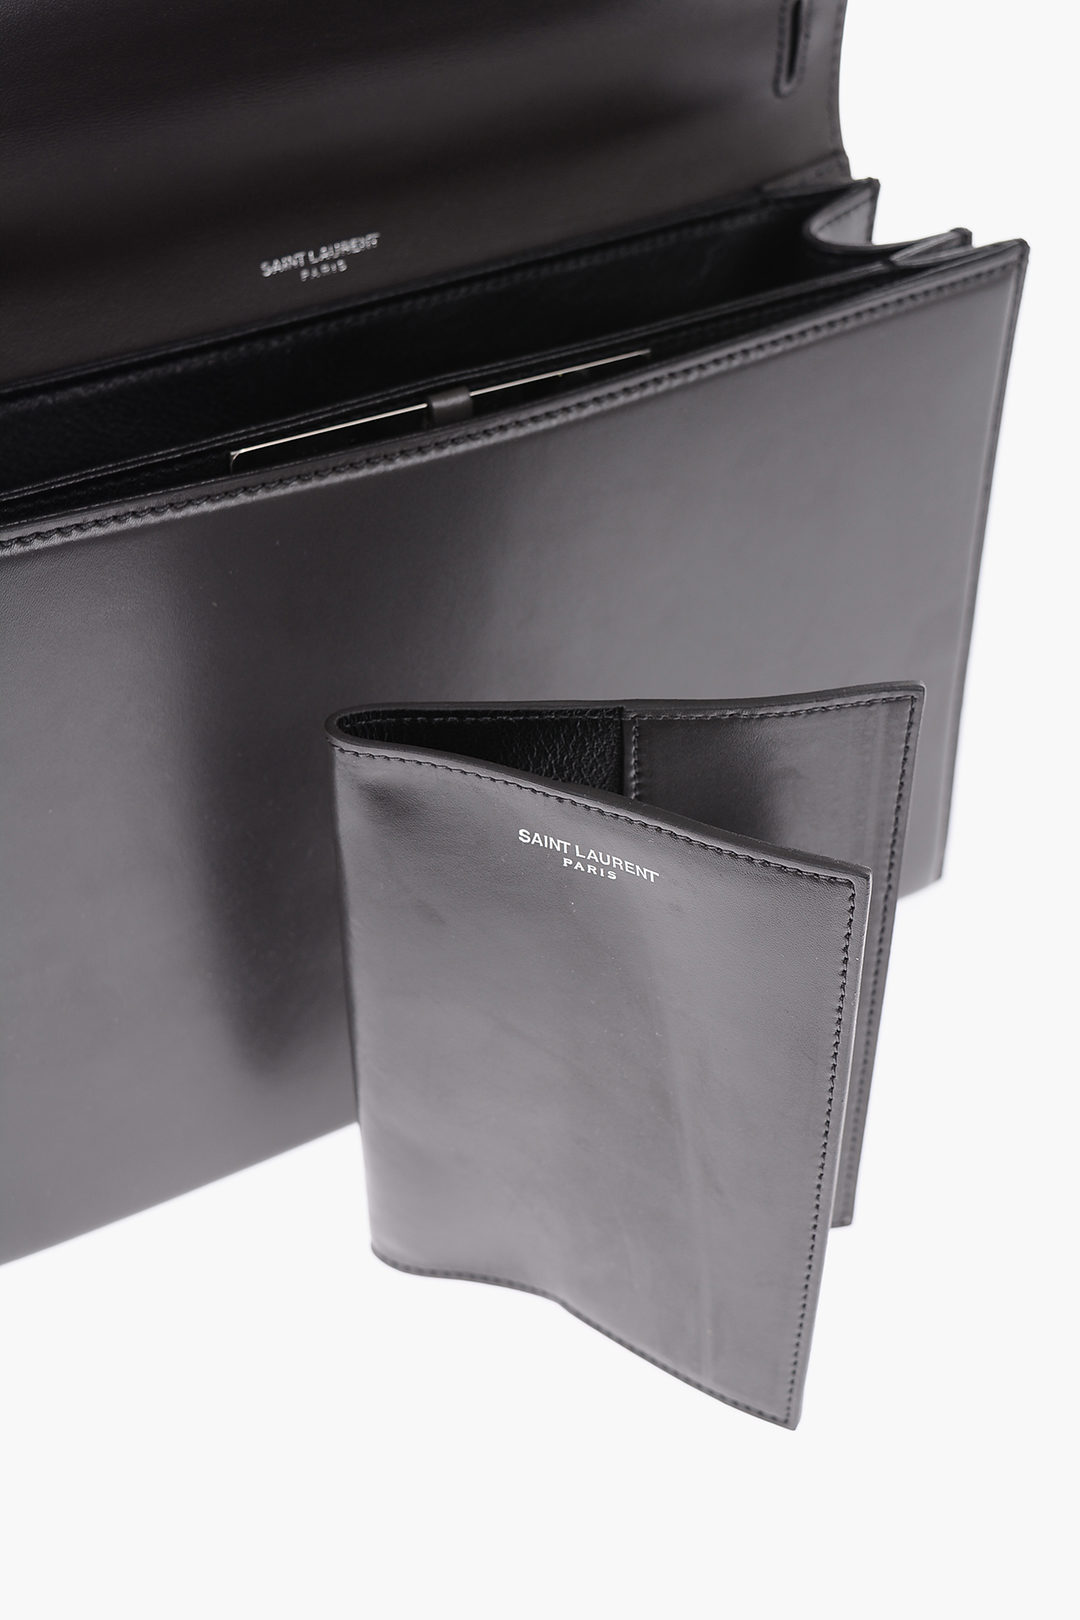 Saint Laurent Babylone Shoulder Bag in Black Leather